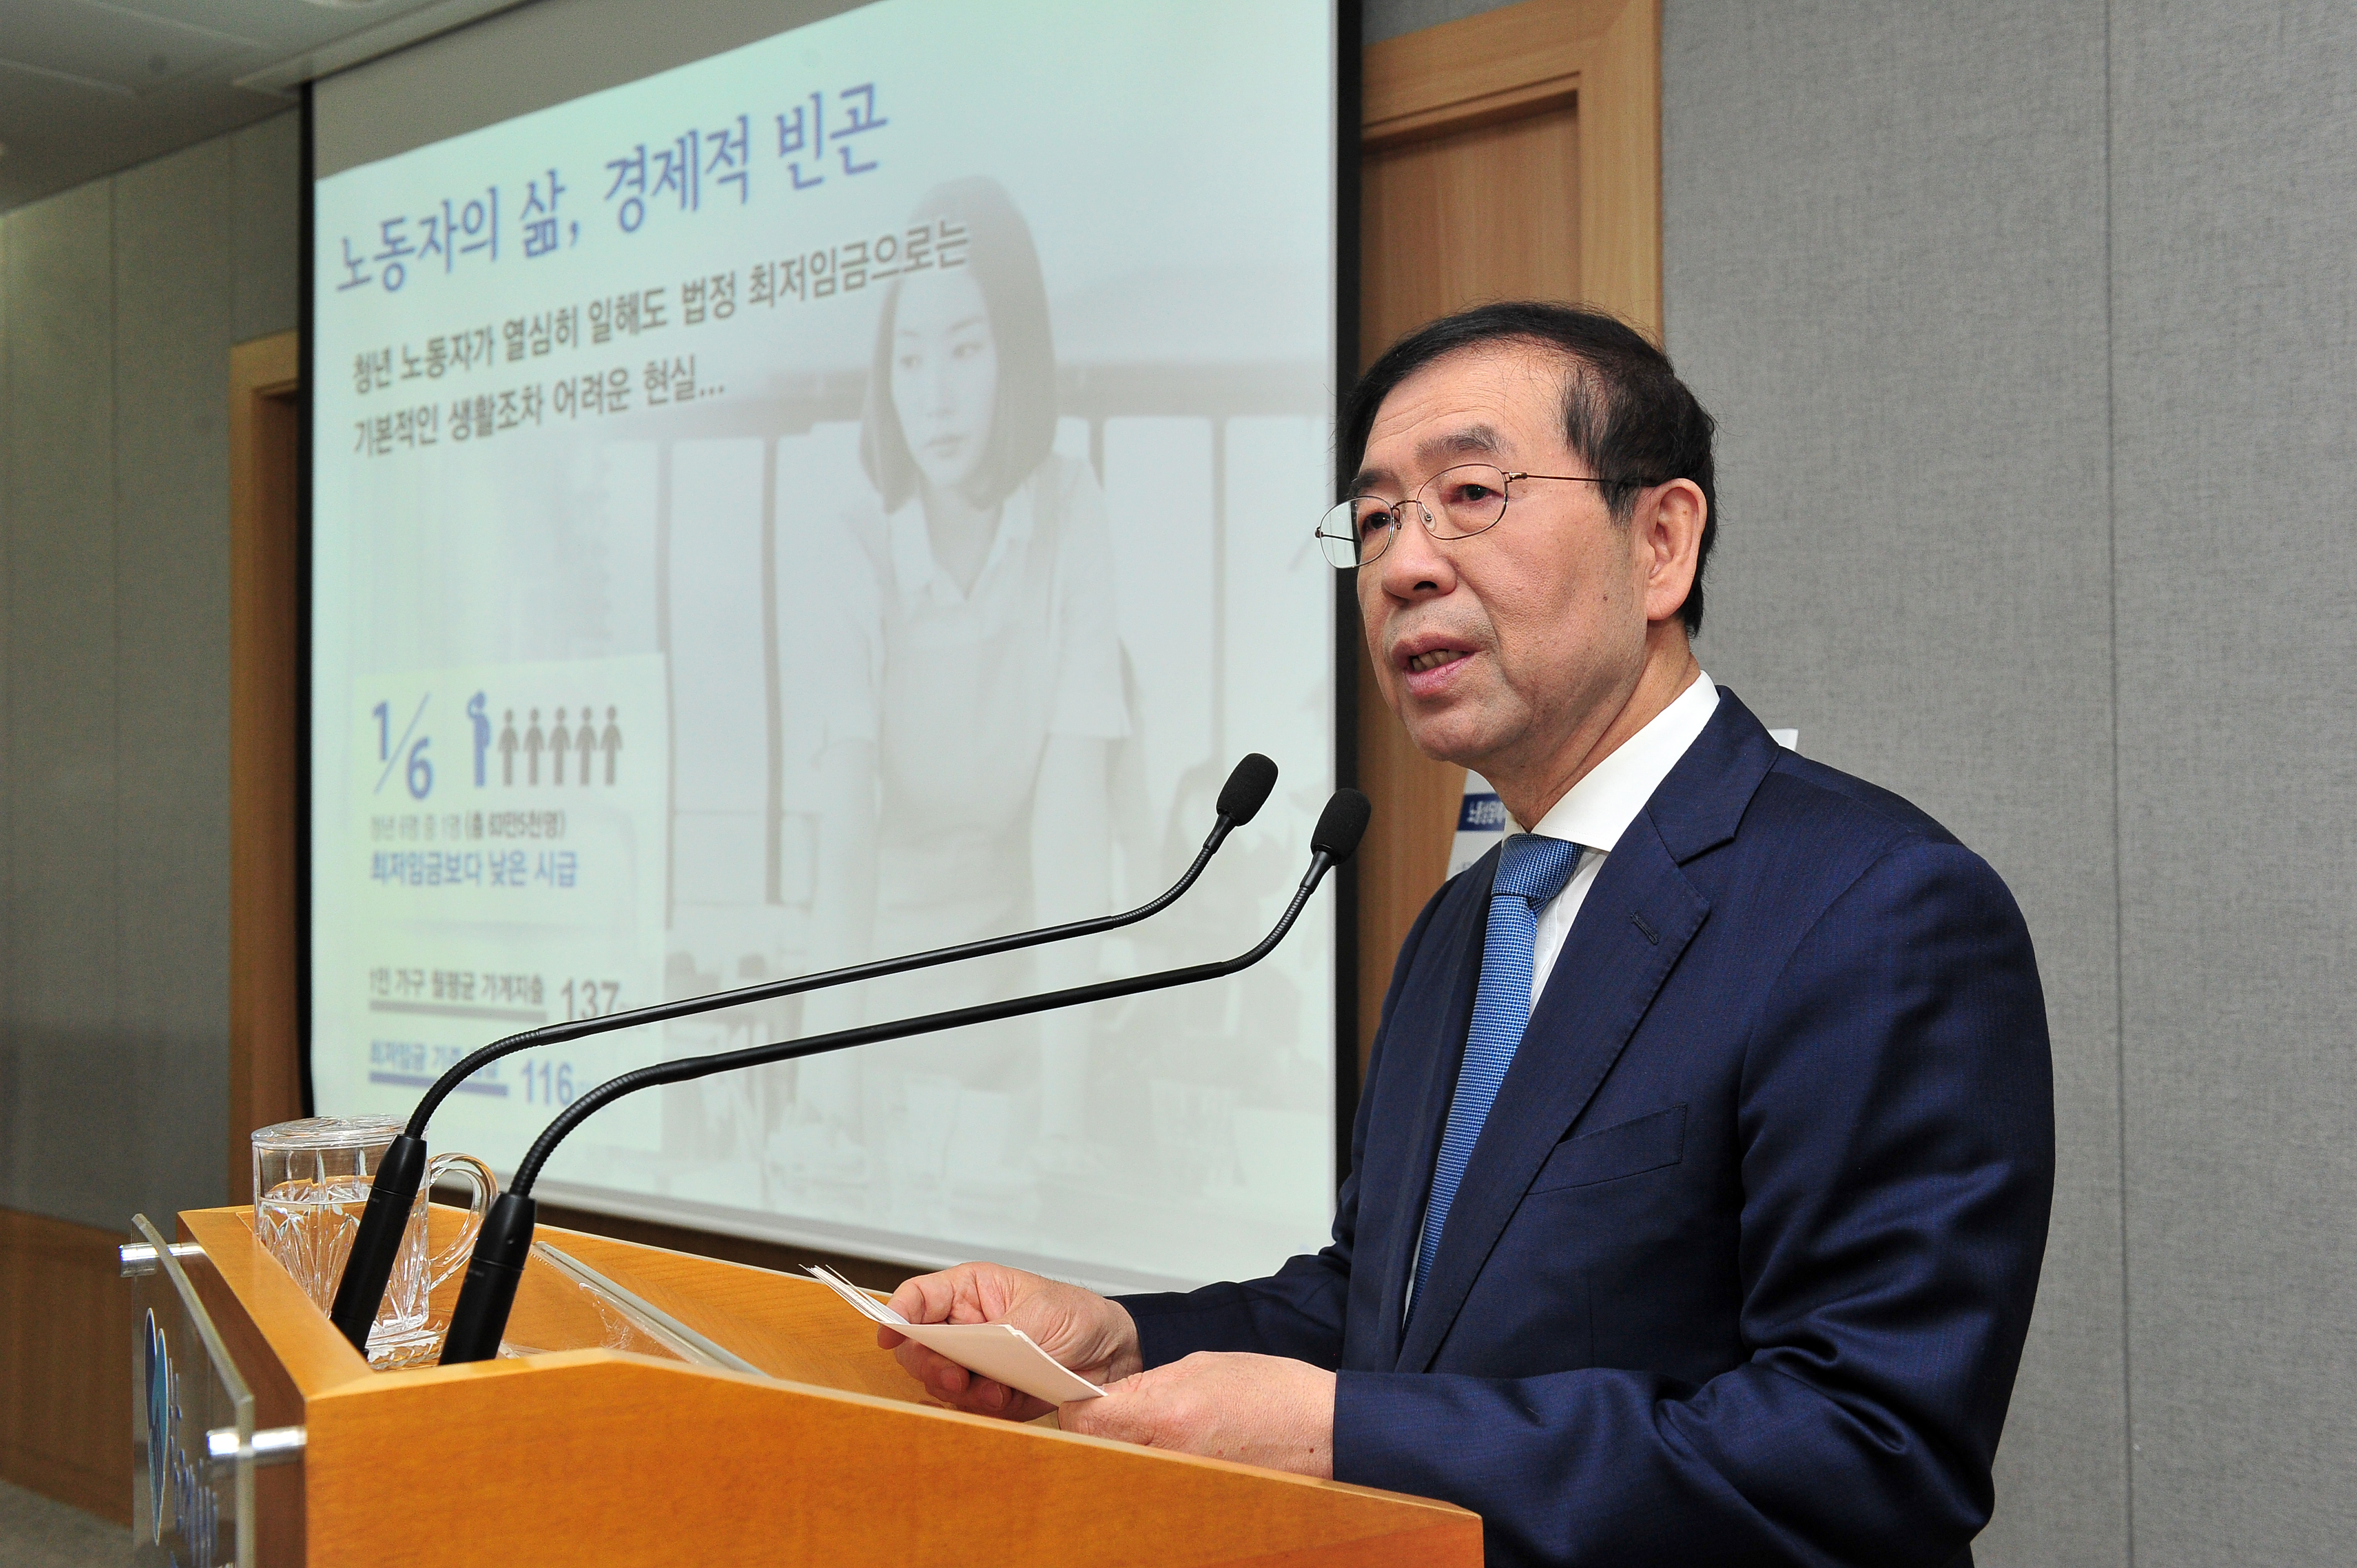 박원순 서울시장이 27일 오전 '노동존중특별시 2016' 계획을 발표하고 있다.